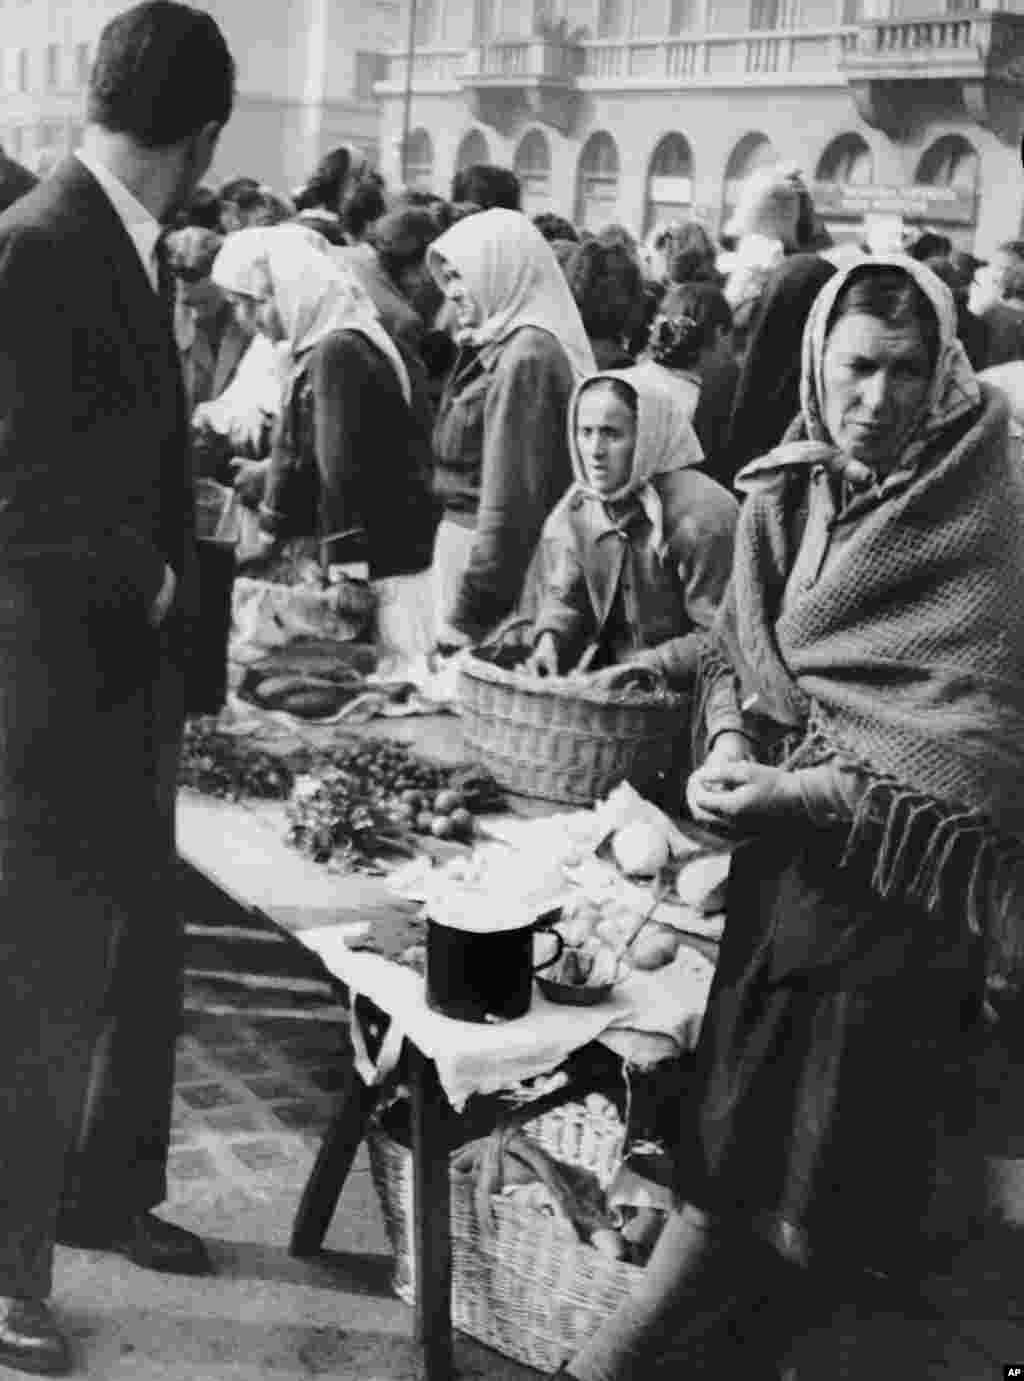 Пазар в Белград през 1950 г., когато напрежението със Съветския съюз води до търговска блокада, недостиг на храна и опасения от военна инвазия. По това време Тито извършва безмилостни репресии срещу онези, които симпатизират на Съветския съюз. Стотици несъгласни с Тито са убити, а хиляди други са изпратени в трудови лагери.